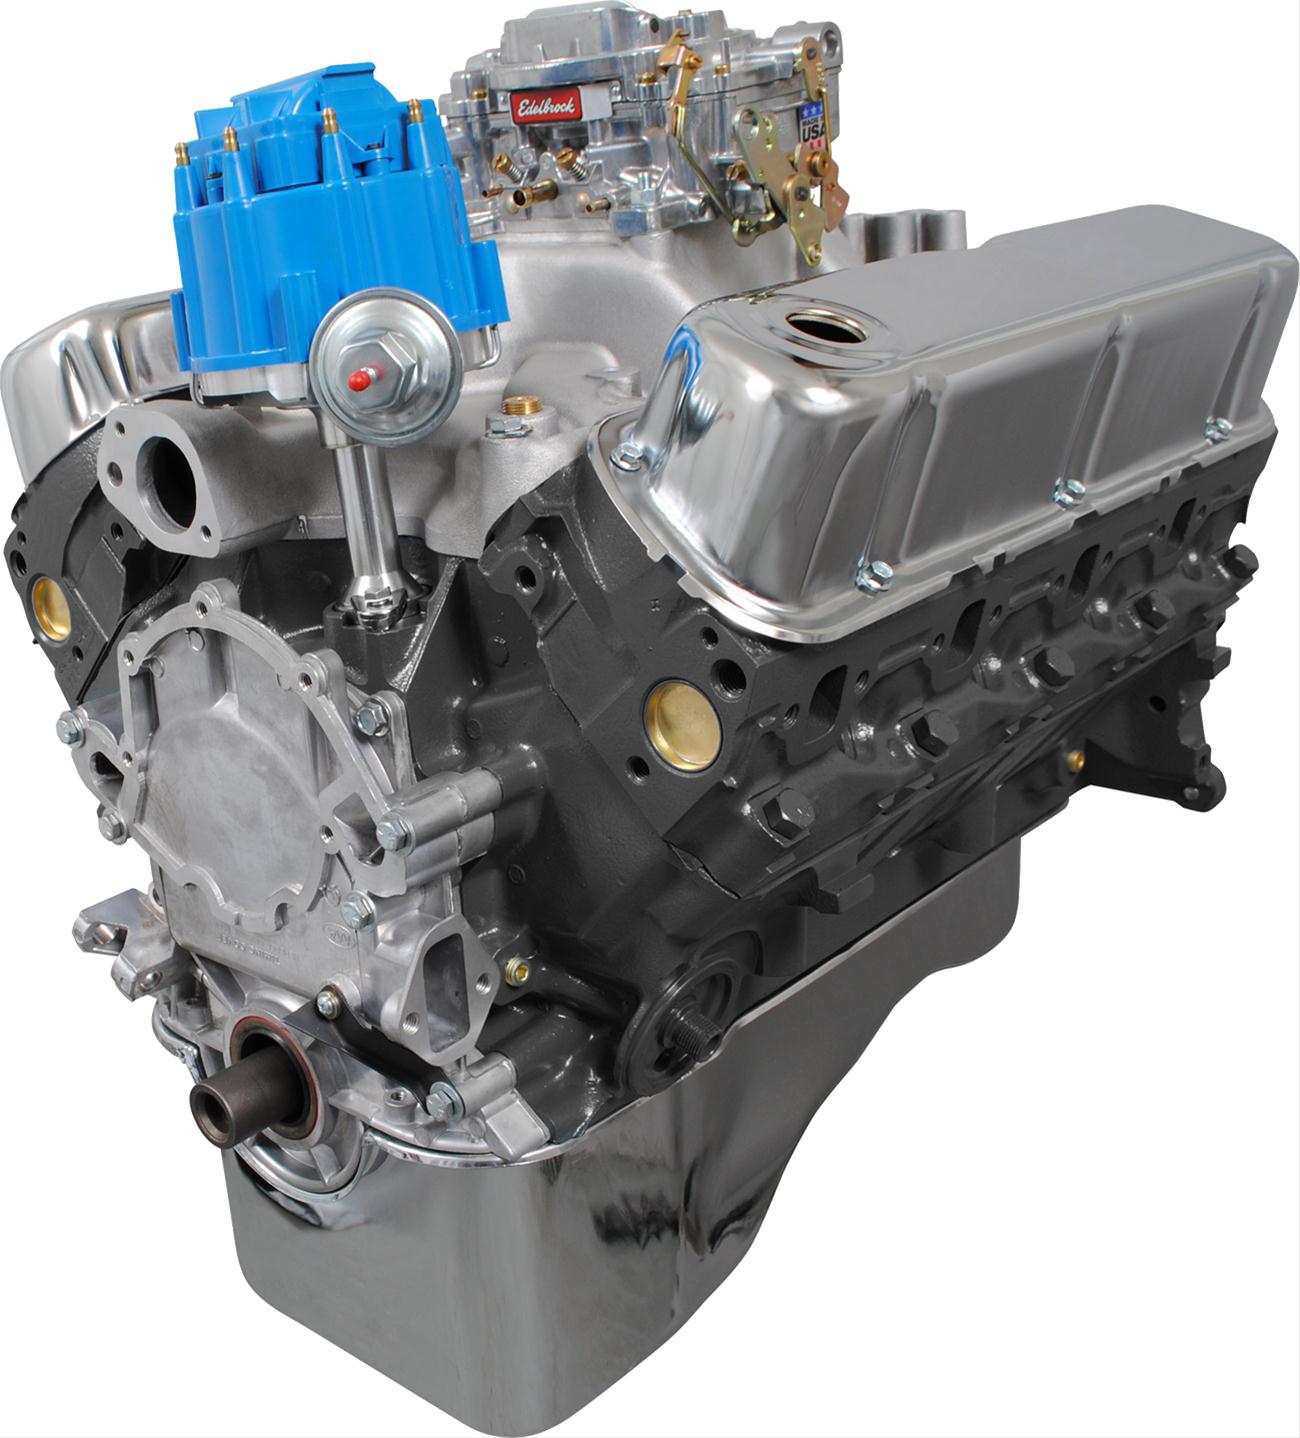 Pixilart - LXV Motors SC 475 4 3 5 by dodgefan2015